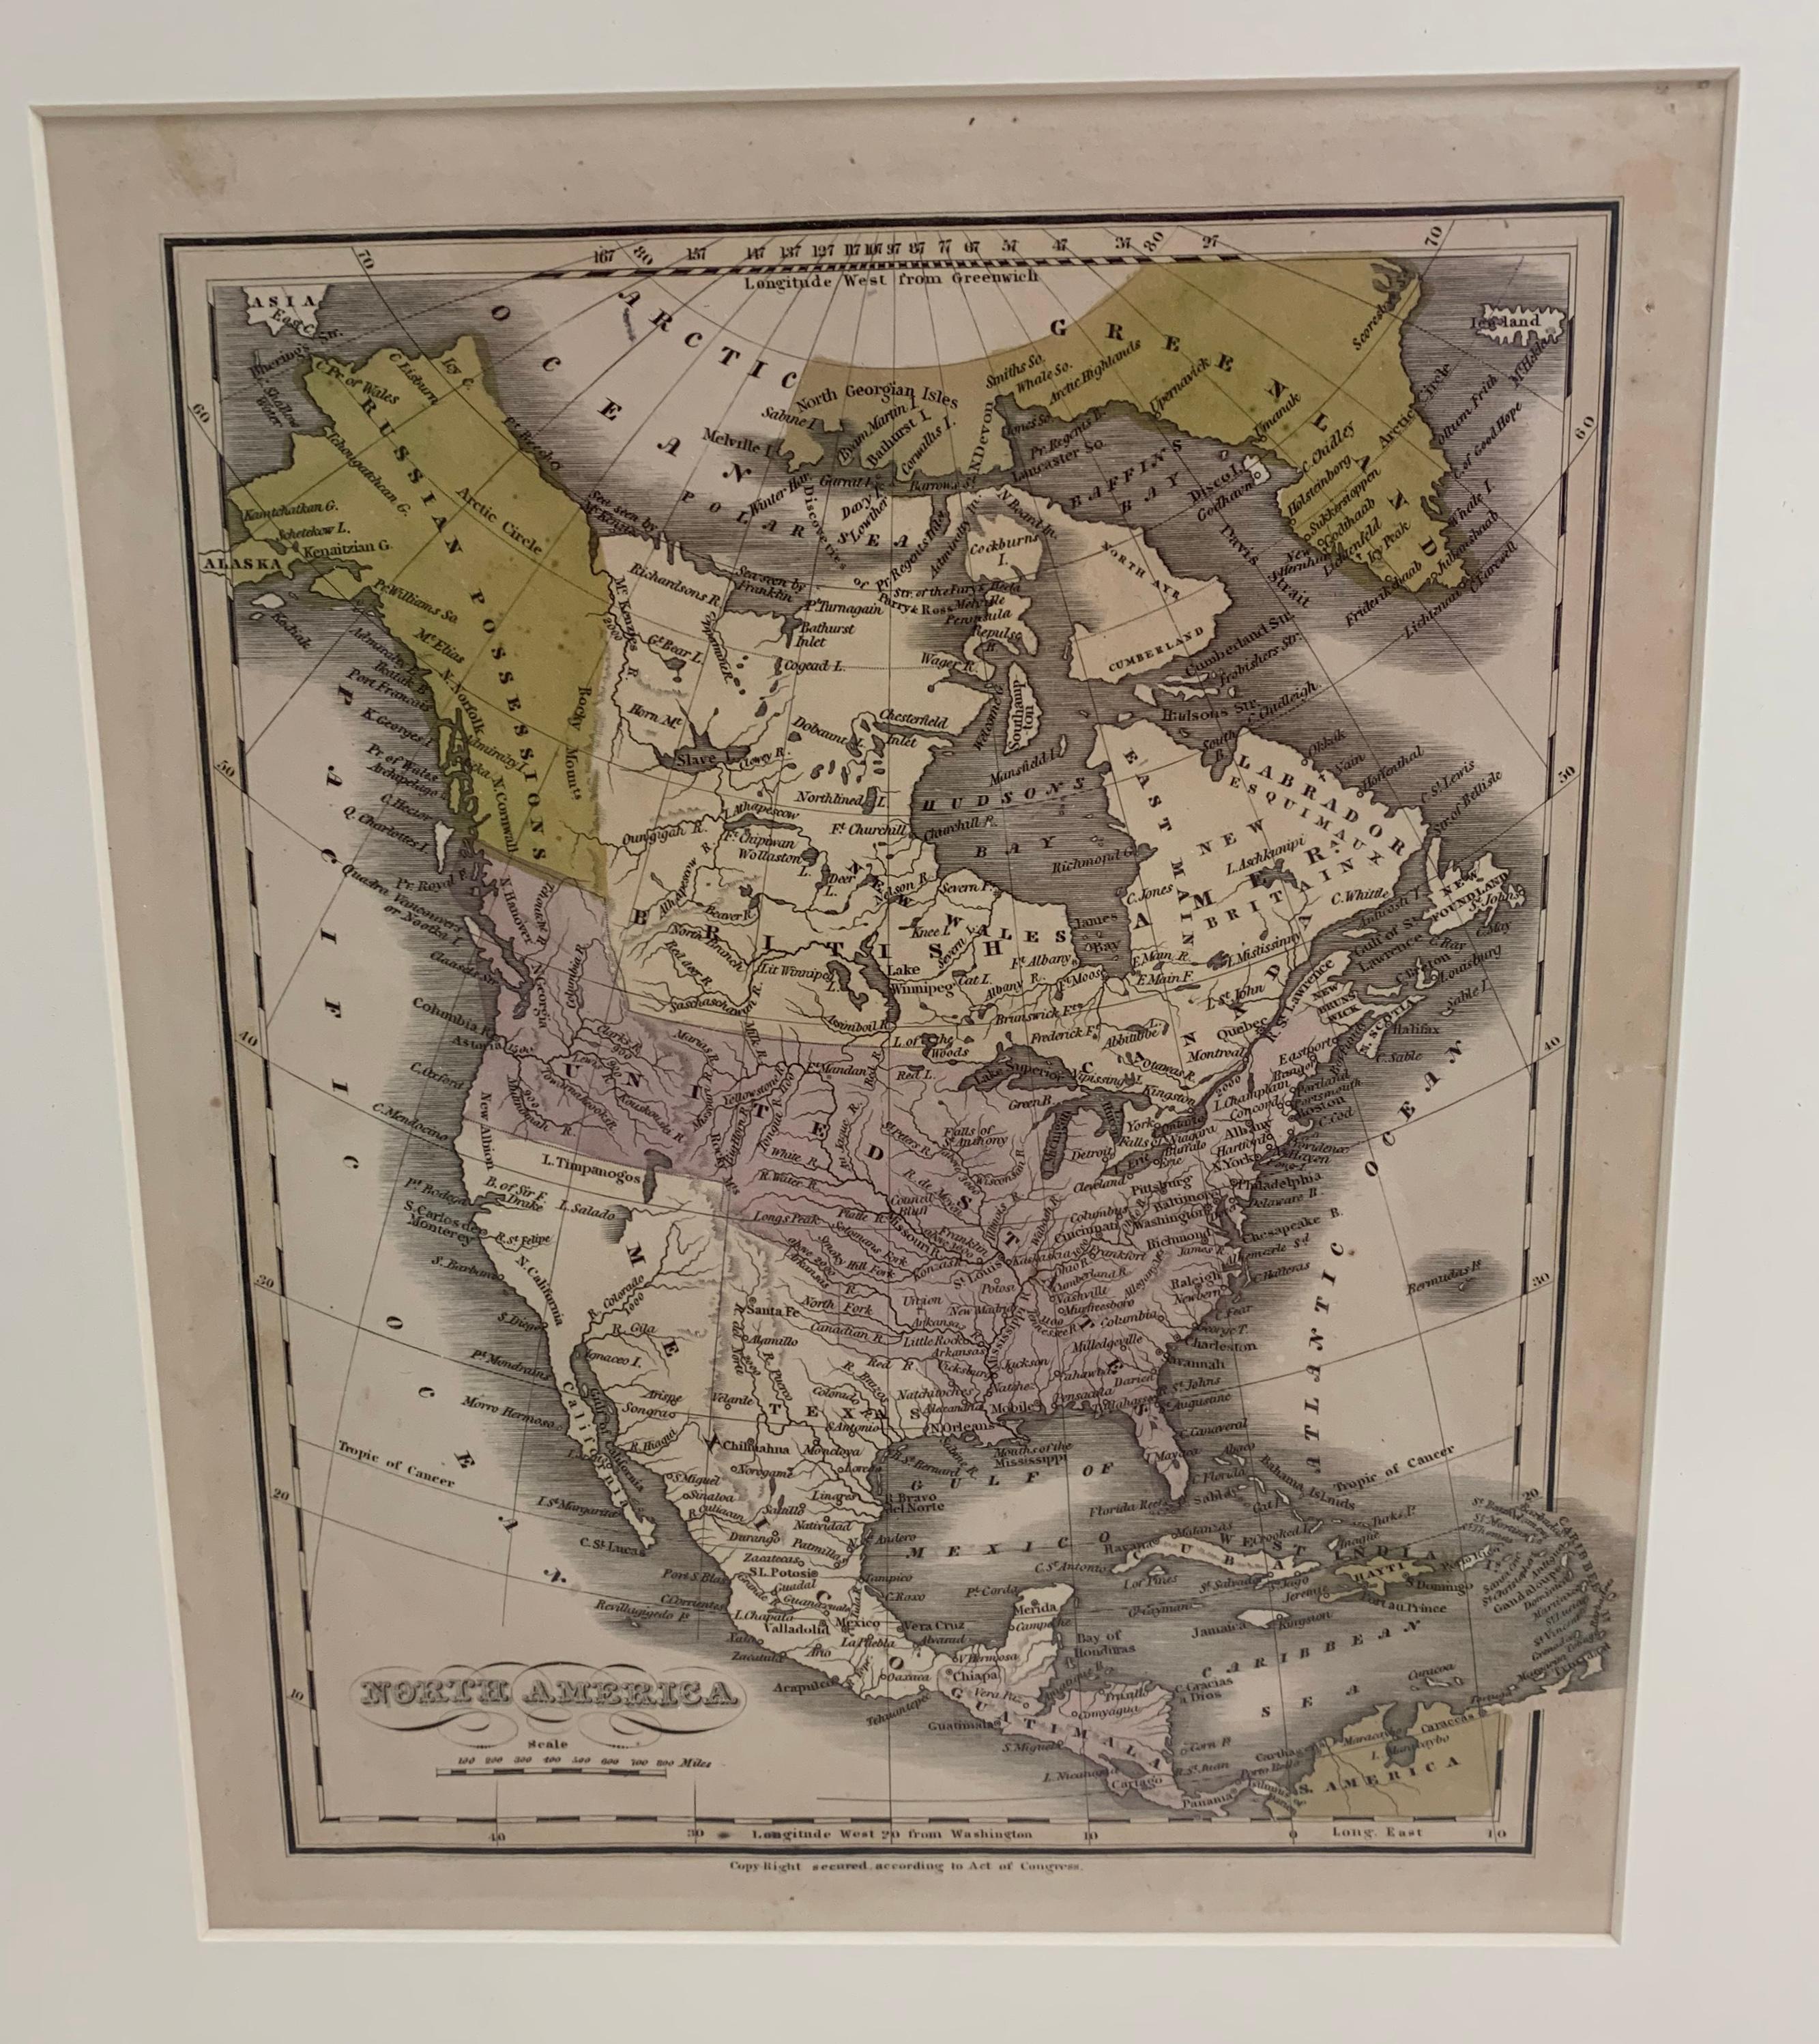 Carte de l'Amérique du Nord publiée vers 1830. La carte montre les États-Unis au Canada. Le Mexique s'étend jusqu'au territoire de la haute Californie. Le Texas apparaît dans le nom mais avant la période de la république. Encadré dans un cadre en